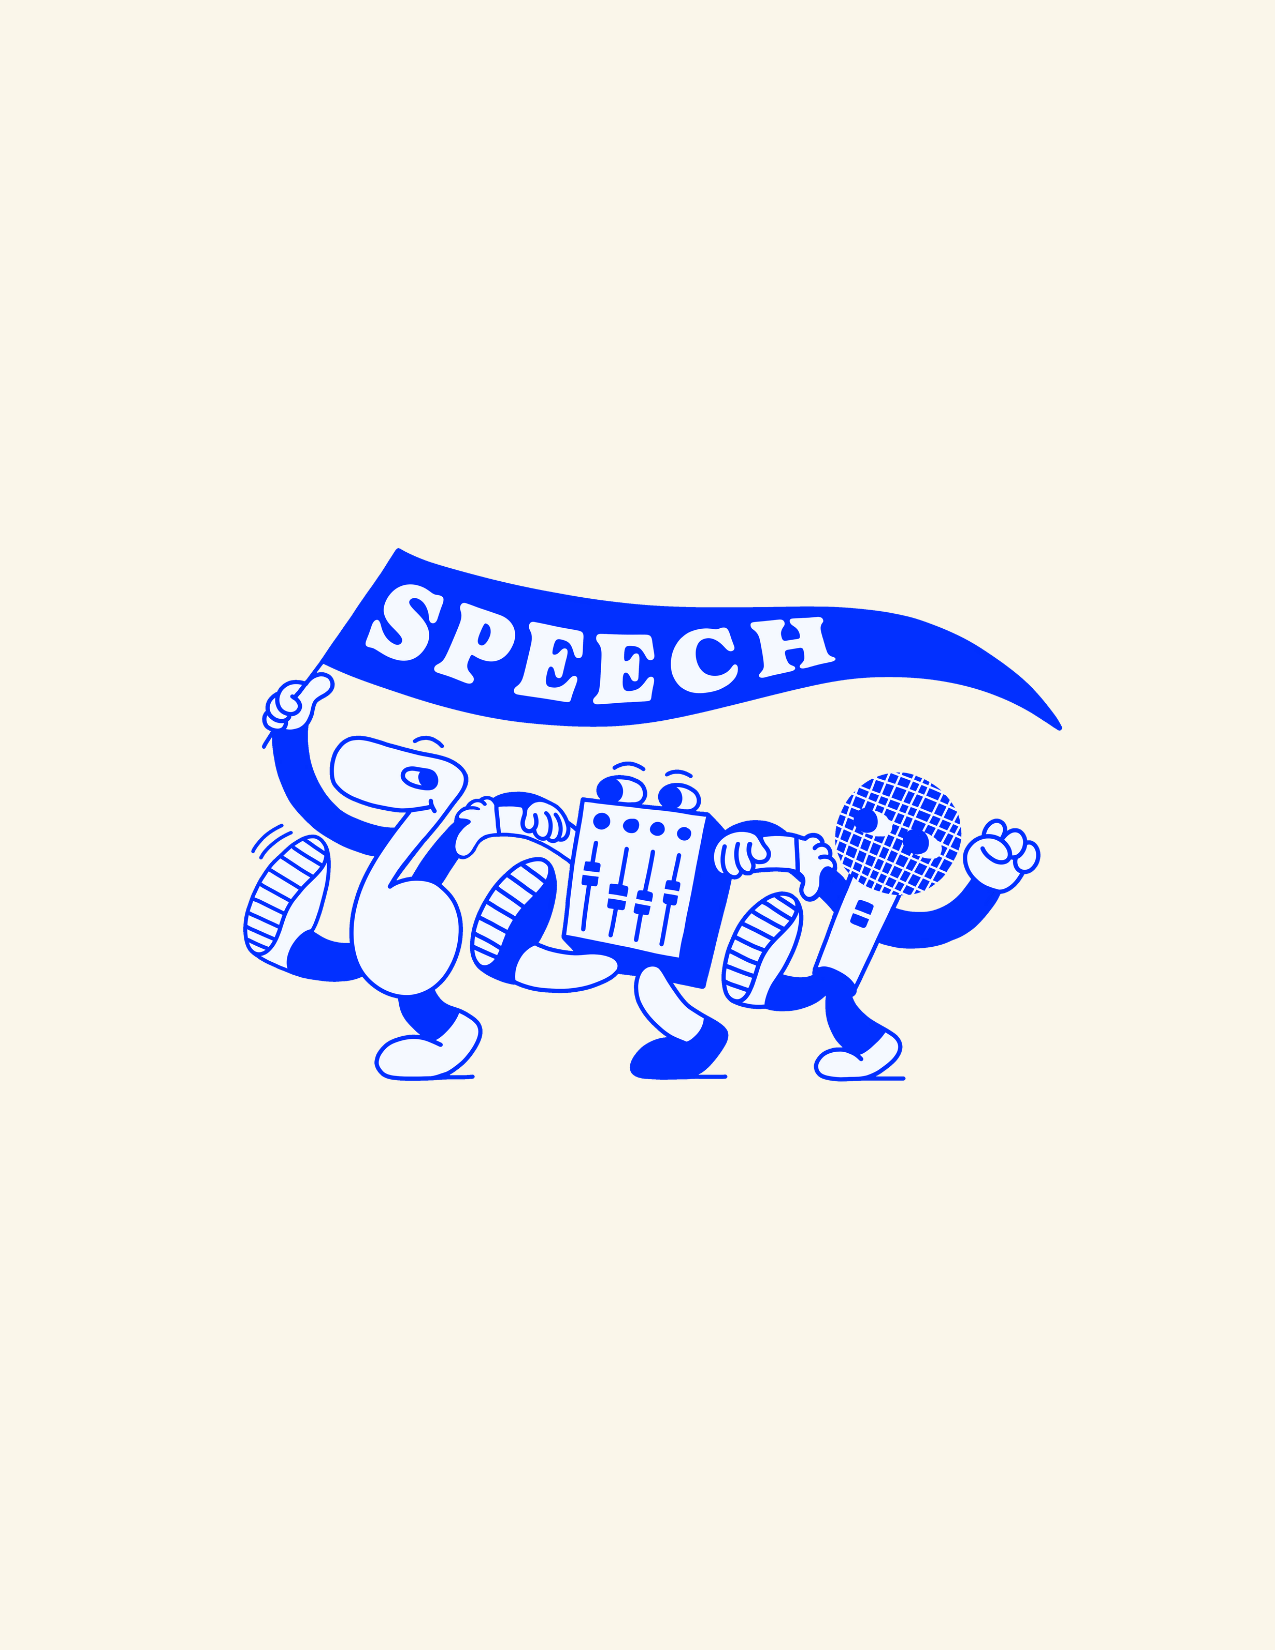 Ateliers Speech - Livret EP Speech Vol.3